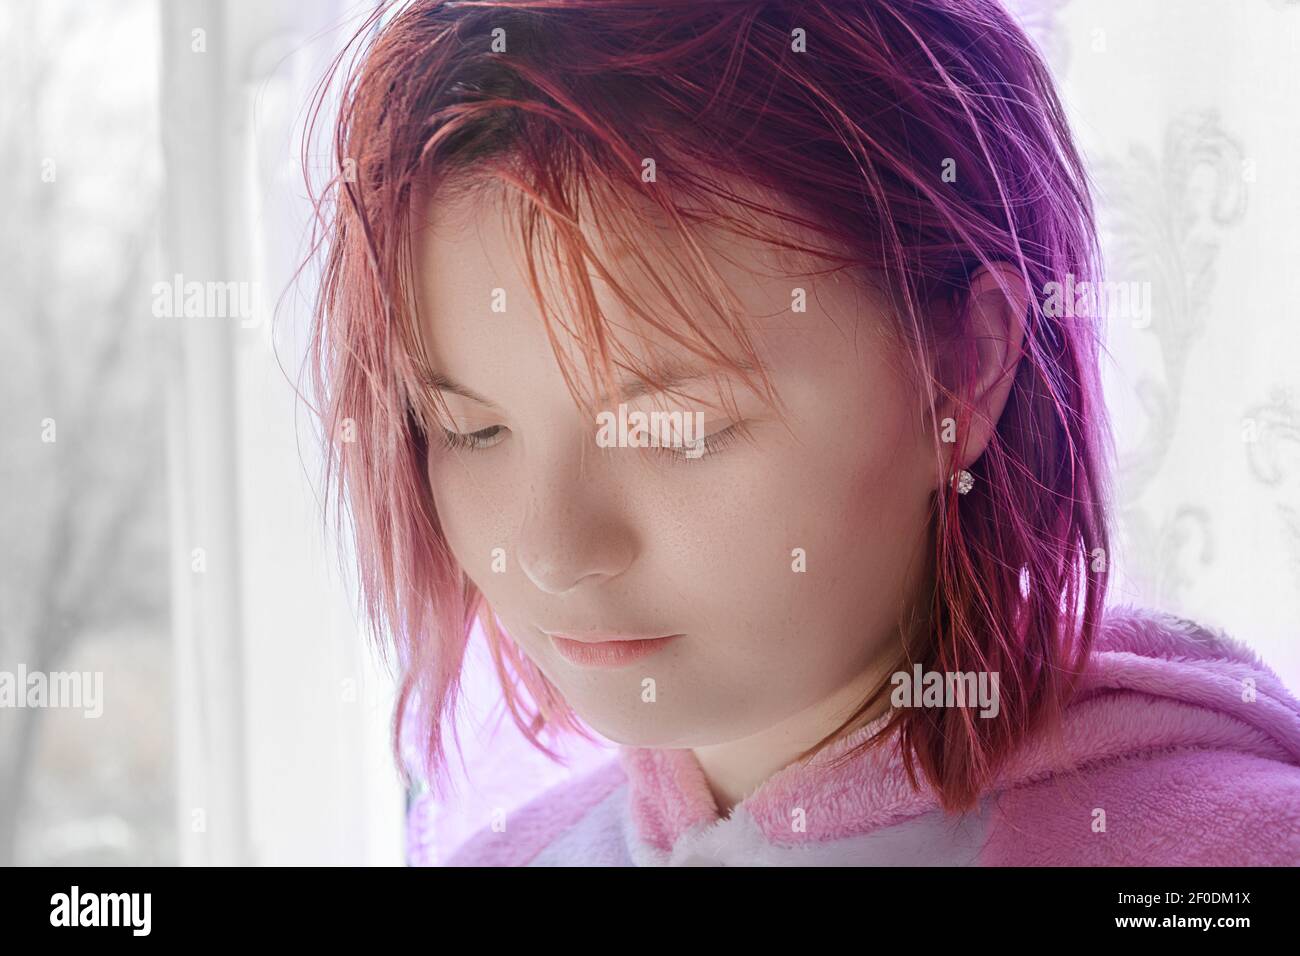 Portrait d'une jeune fille aux cheveux rouges. Elle descend les yeux et regarde vers le bas. Des émotions tristes sur le visage. Gros plan, mise au point sélective. Banque D'Images